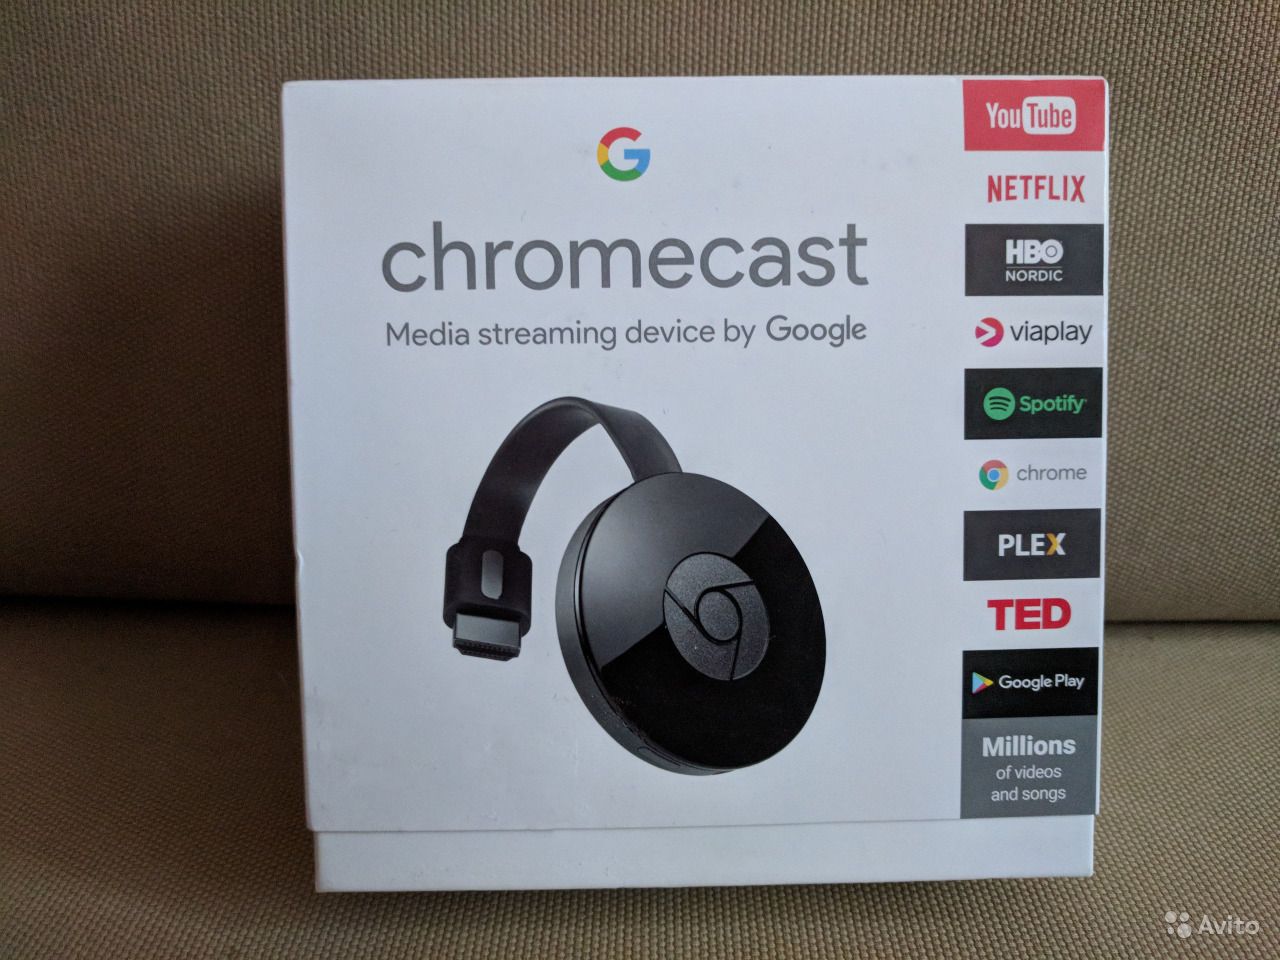 Действительно Google Chromecast настолько крутая ТВ-приставка для вашего телевизора или здесь больше маркетинга Подробный обзор с указанием преимуществ и недостатков